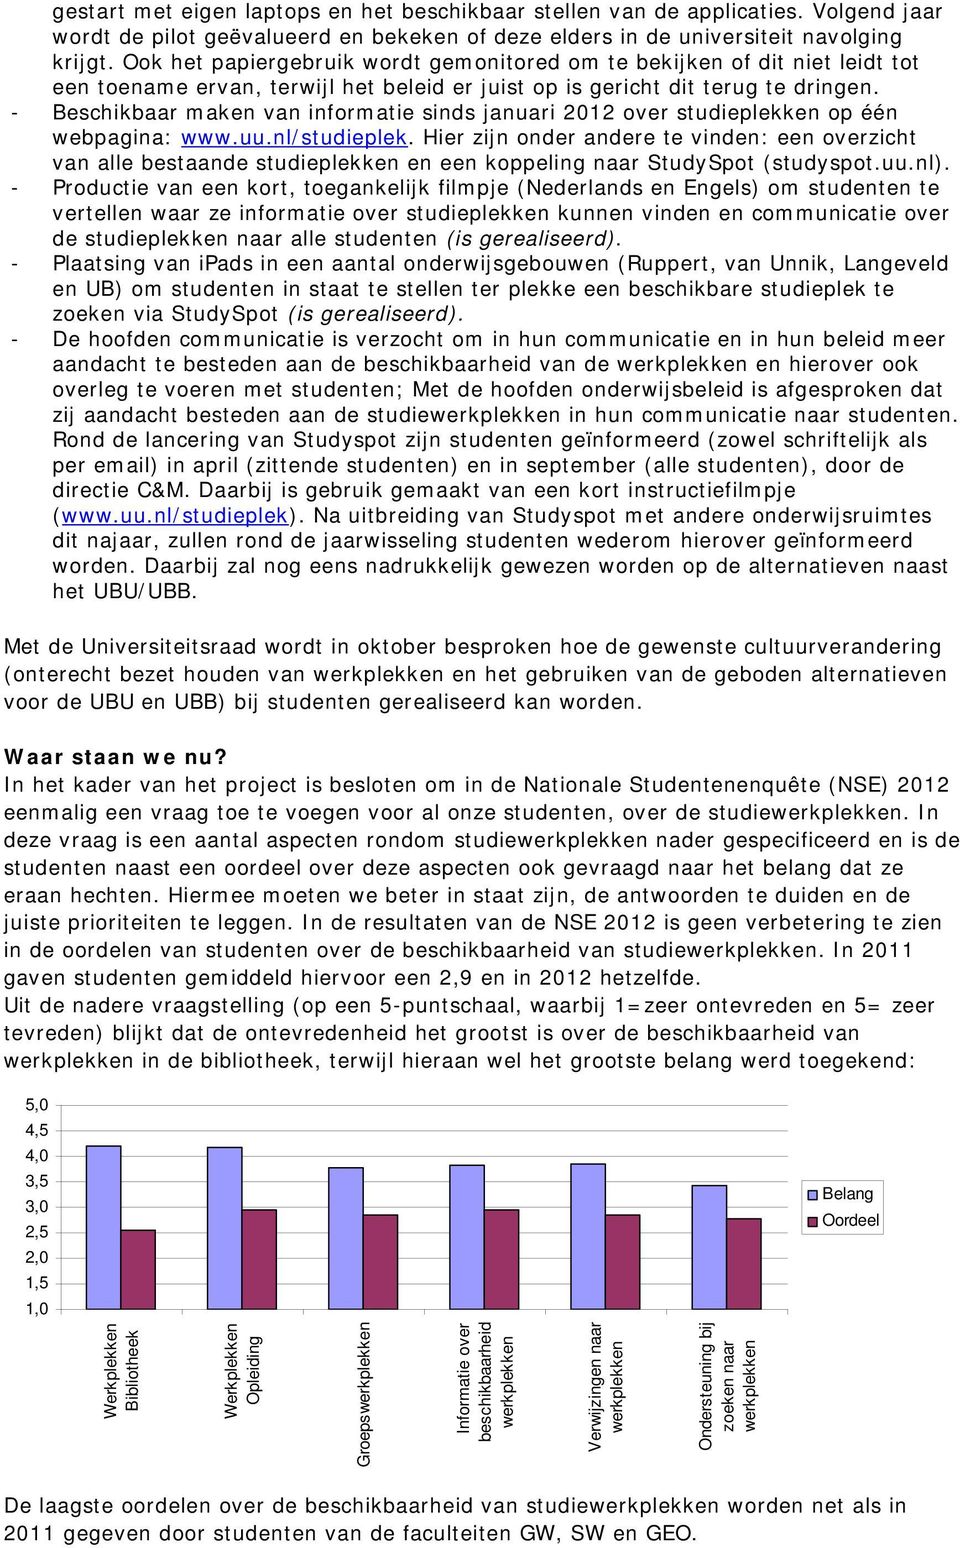 - Beschikbaar maken van informatie sinds januari 2012 over studieplekken op één webpagina: www.uu.nl/studieplek.